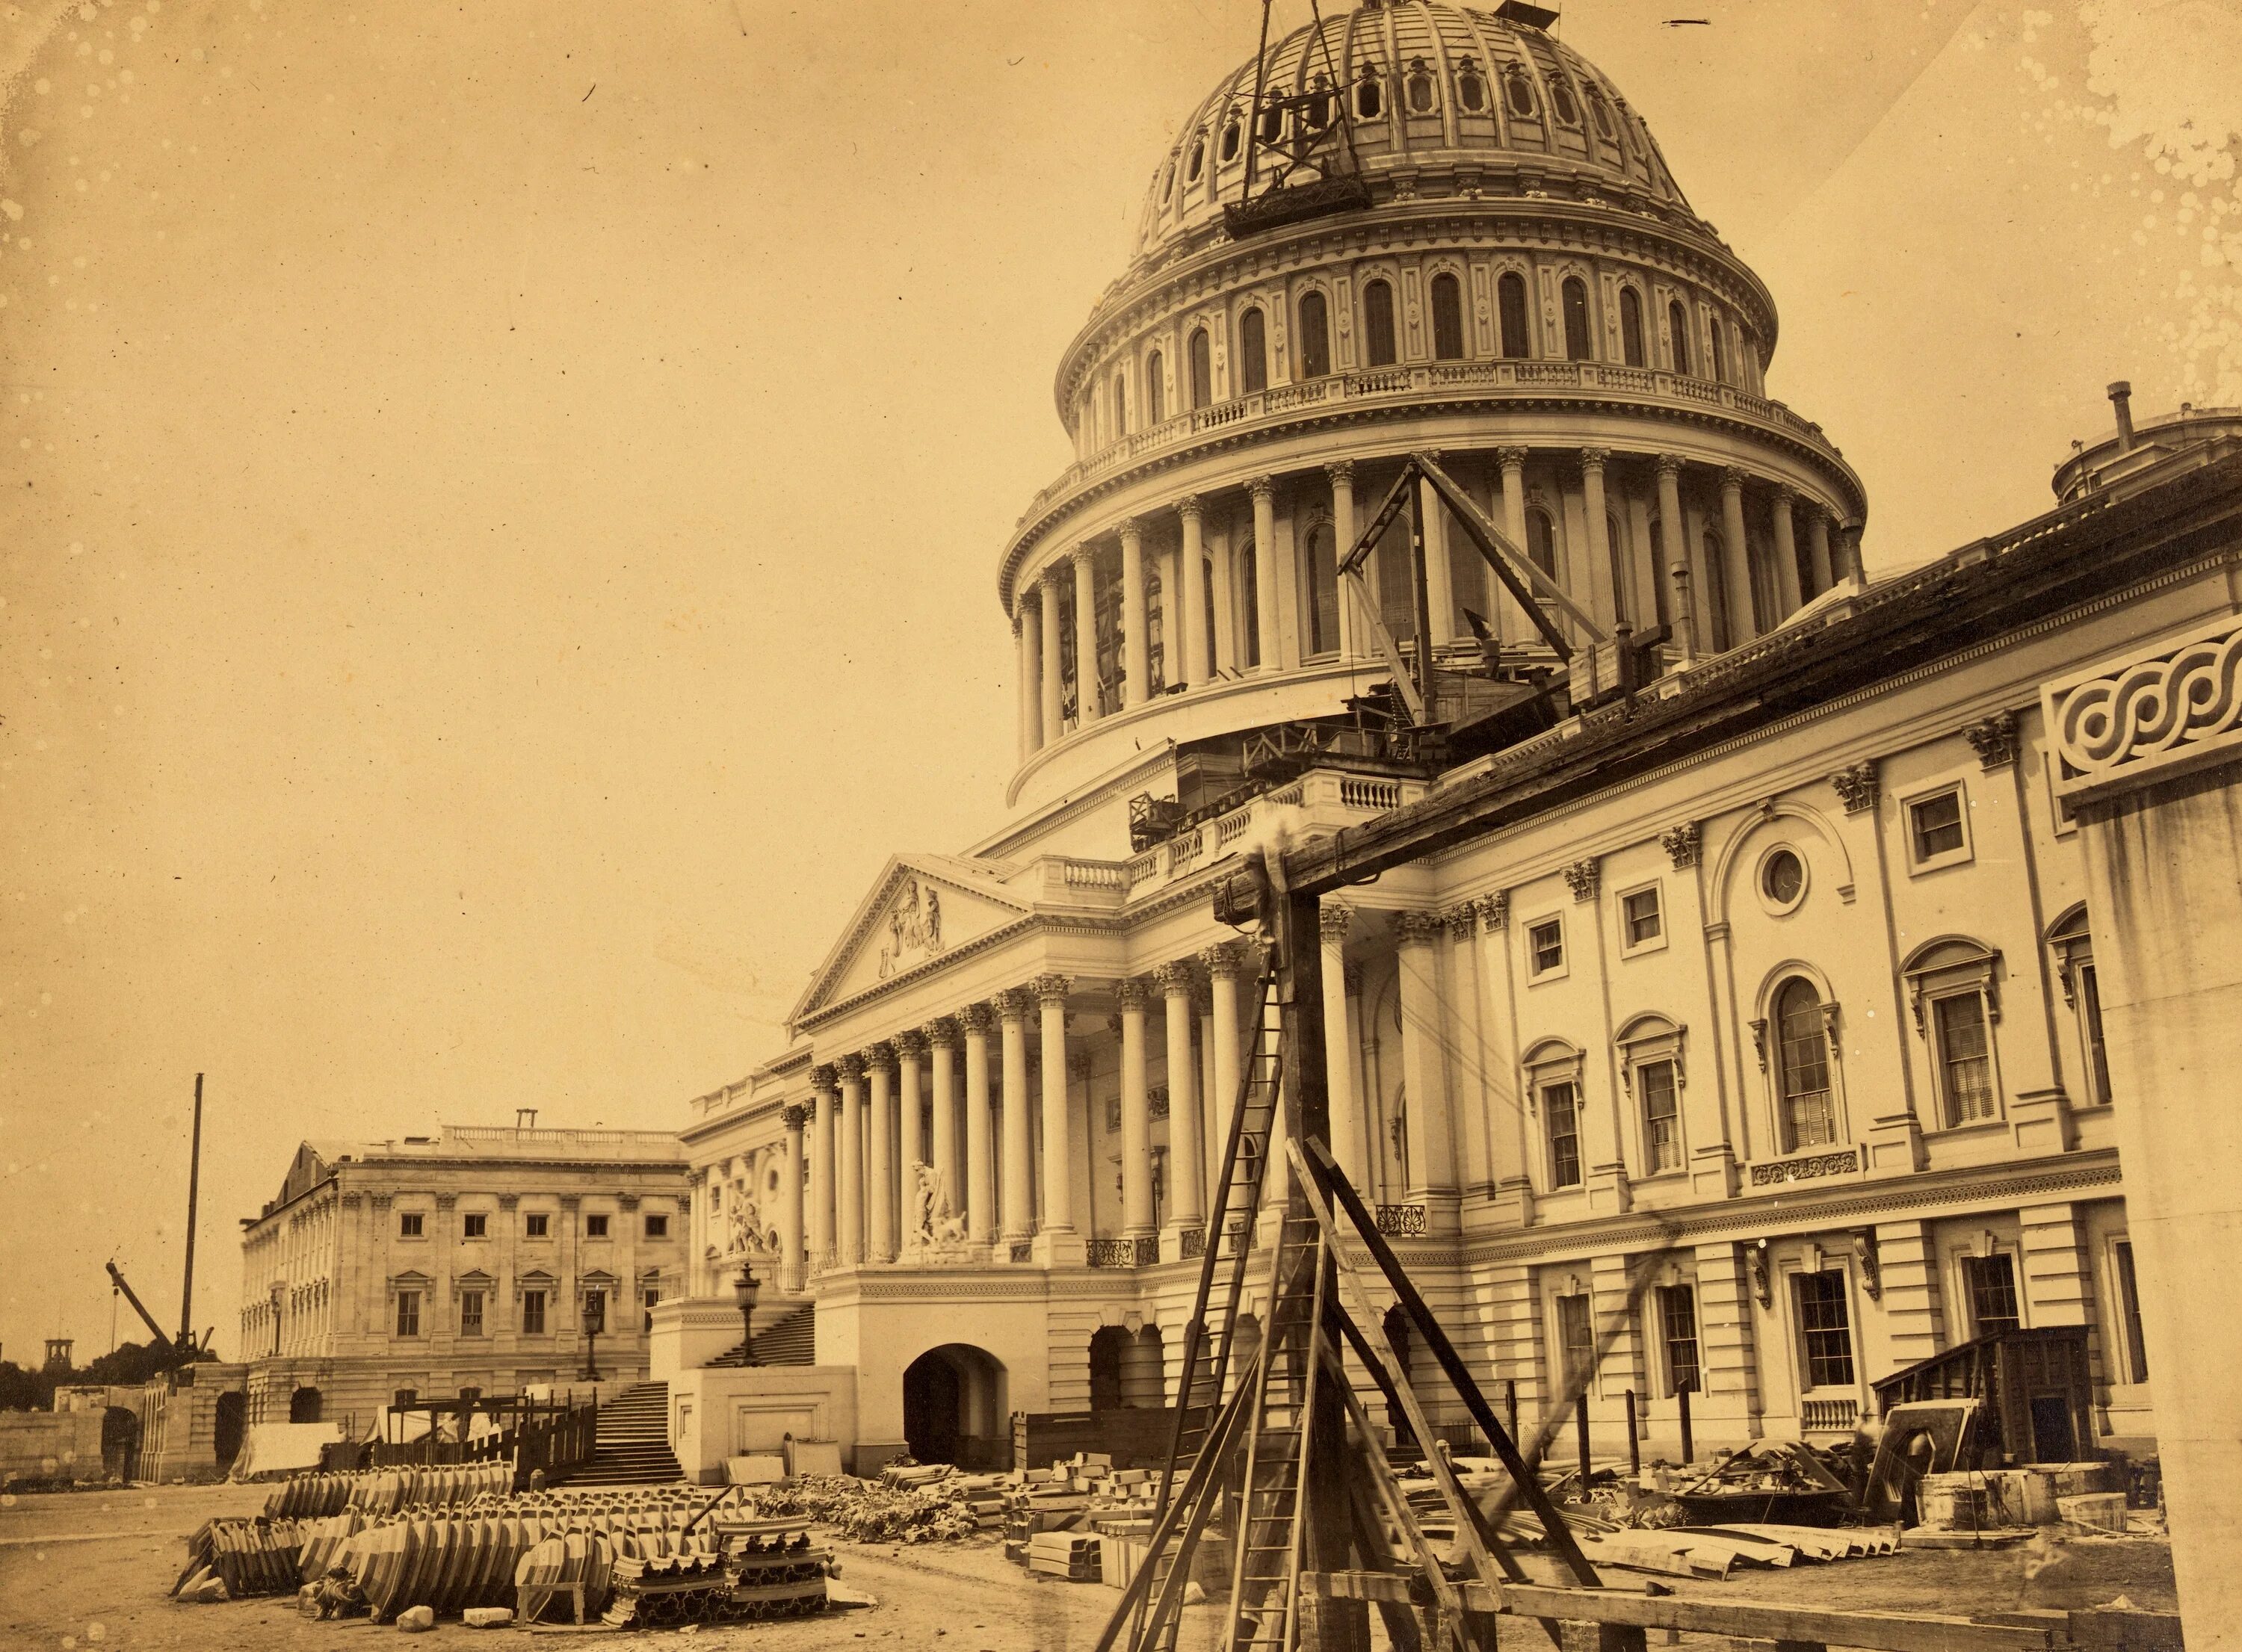 Fss fc ln state hist. Купол Капитолия в Вашингтоне. Капитолий США 19 век. Капитолий Вашингтон 19 век. Капитолий США 1793.